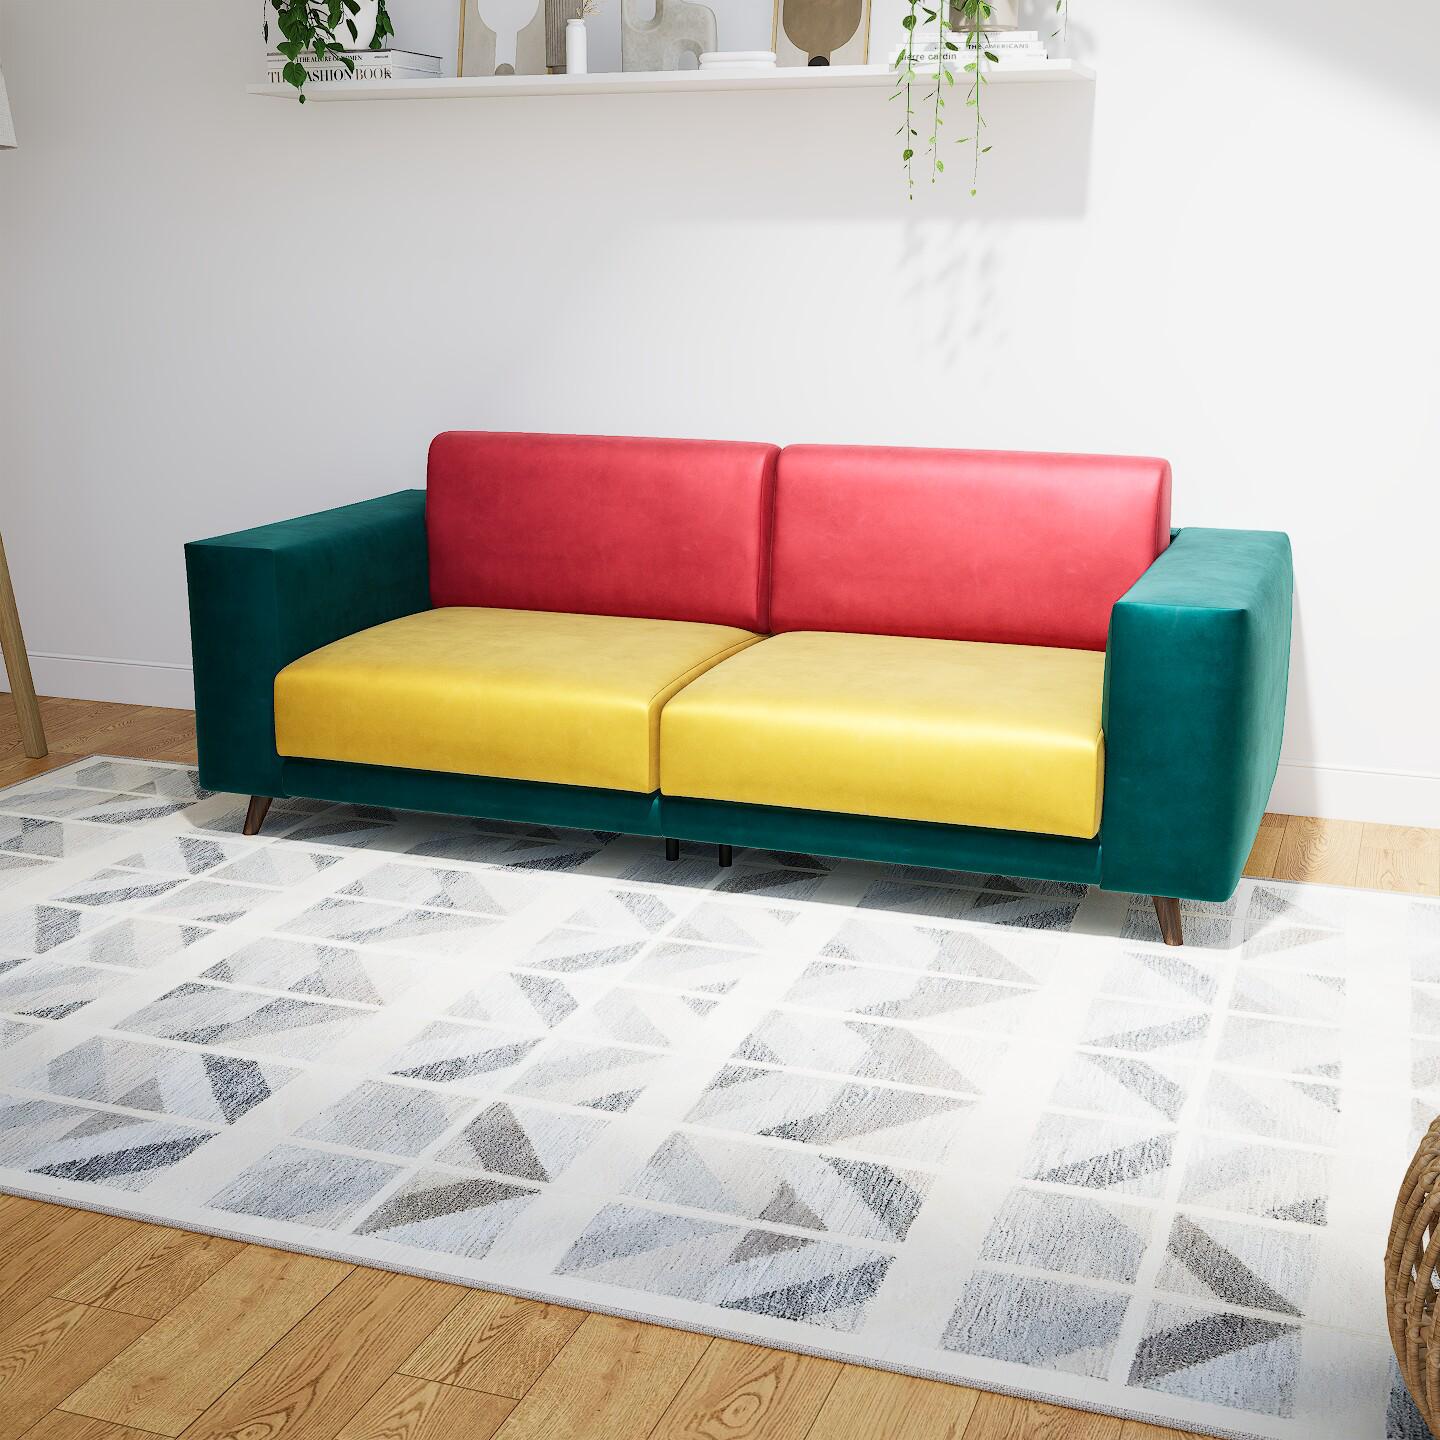 Sofa 2-Sitzer Samt Rapsgelb Samt - Elegantes, gemütliches 2-Sitzer Sofa: Hochwertige Qualität, einzigartiges Design - 208 x 75 x 98 cm, konfigurierbar von MYCS